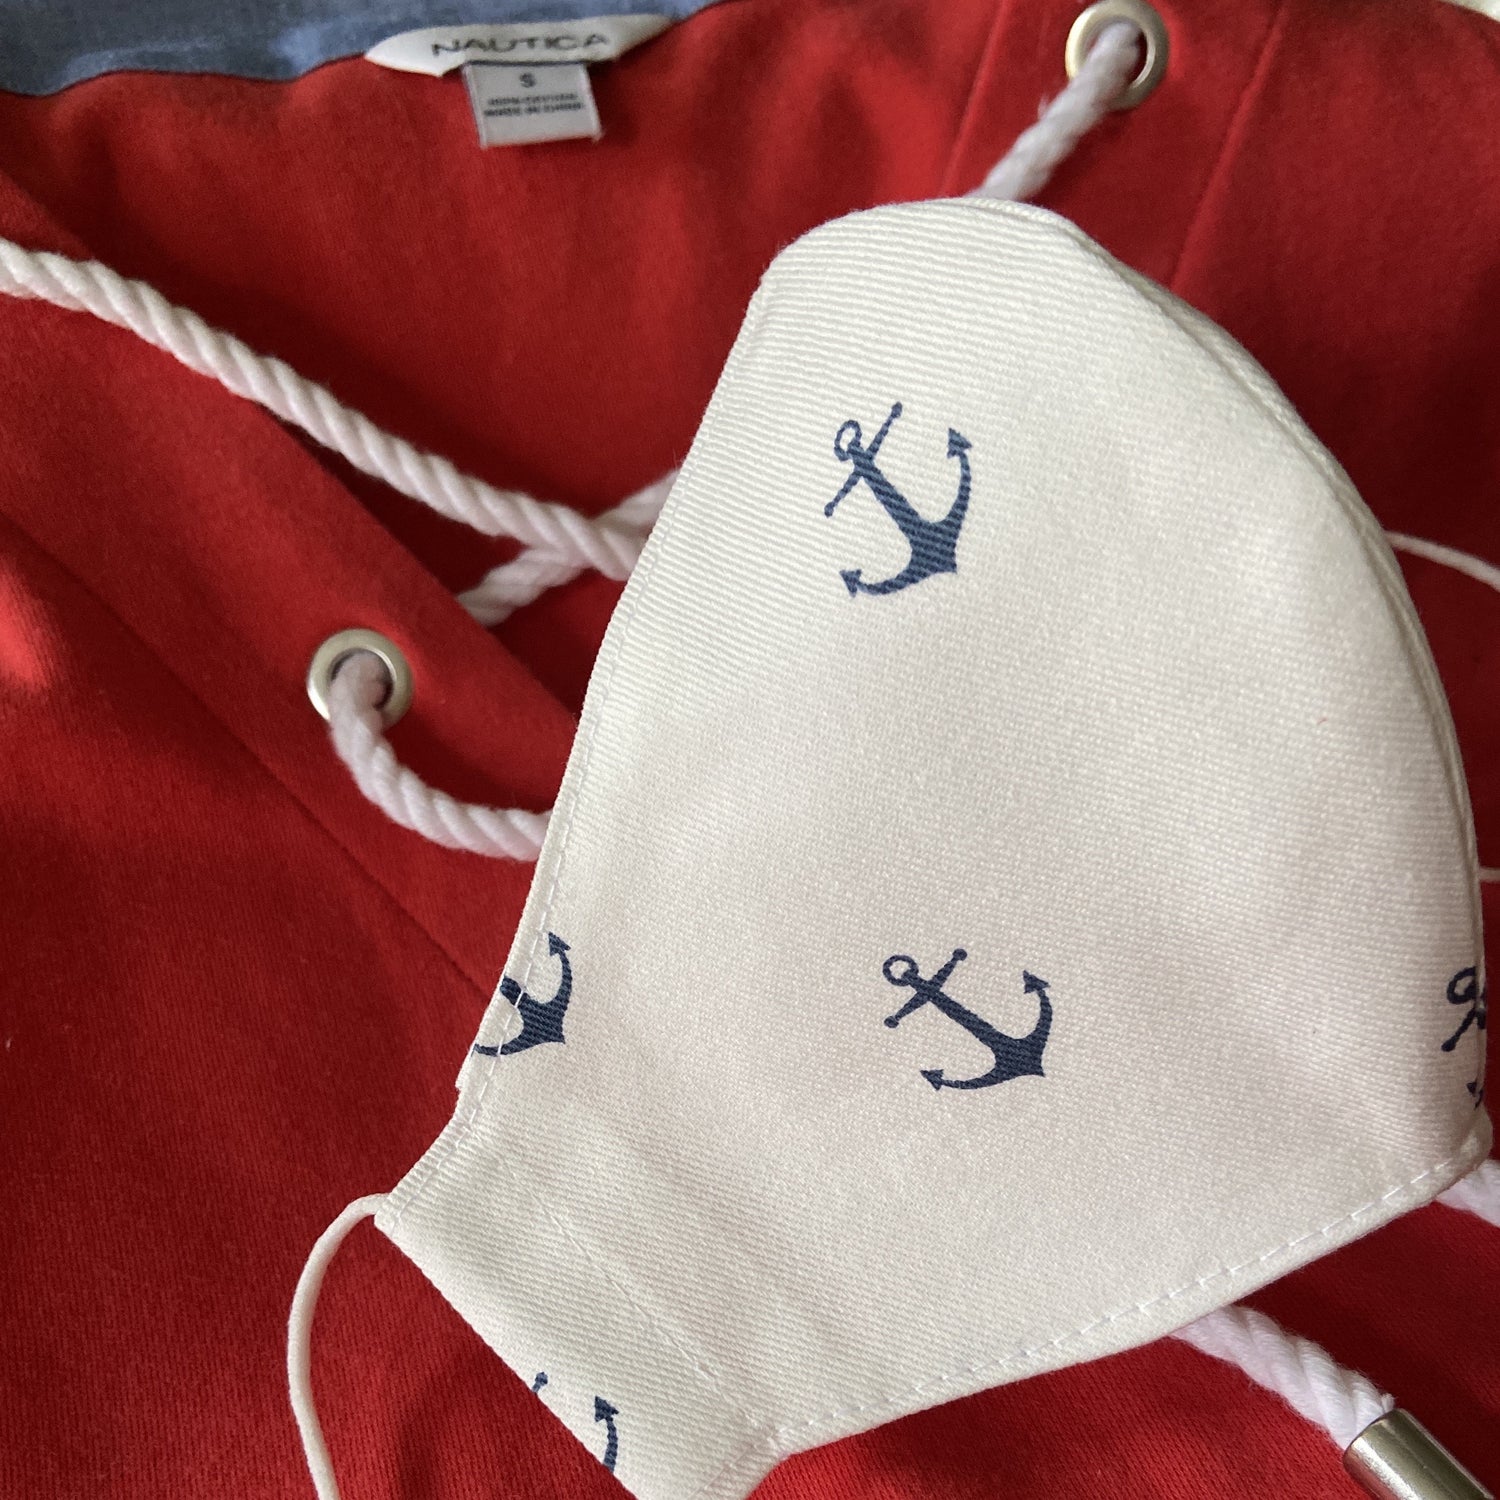 Anchors away nautical mask